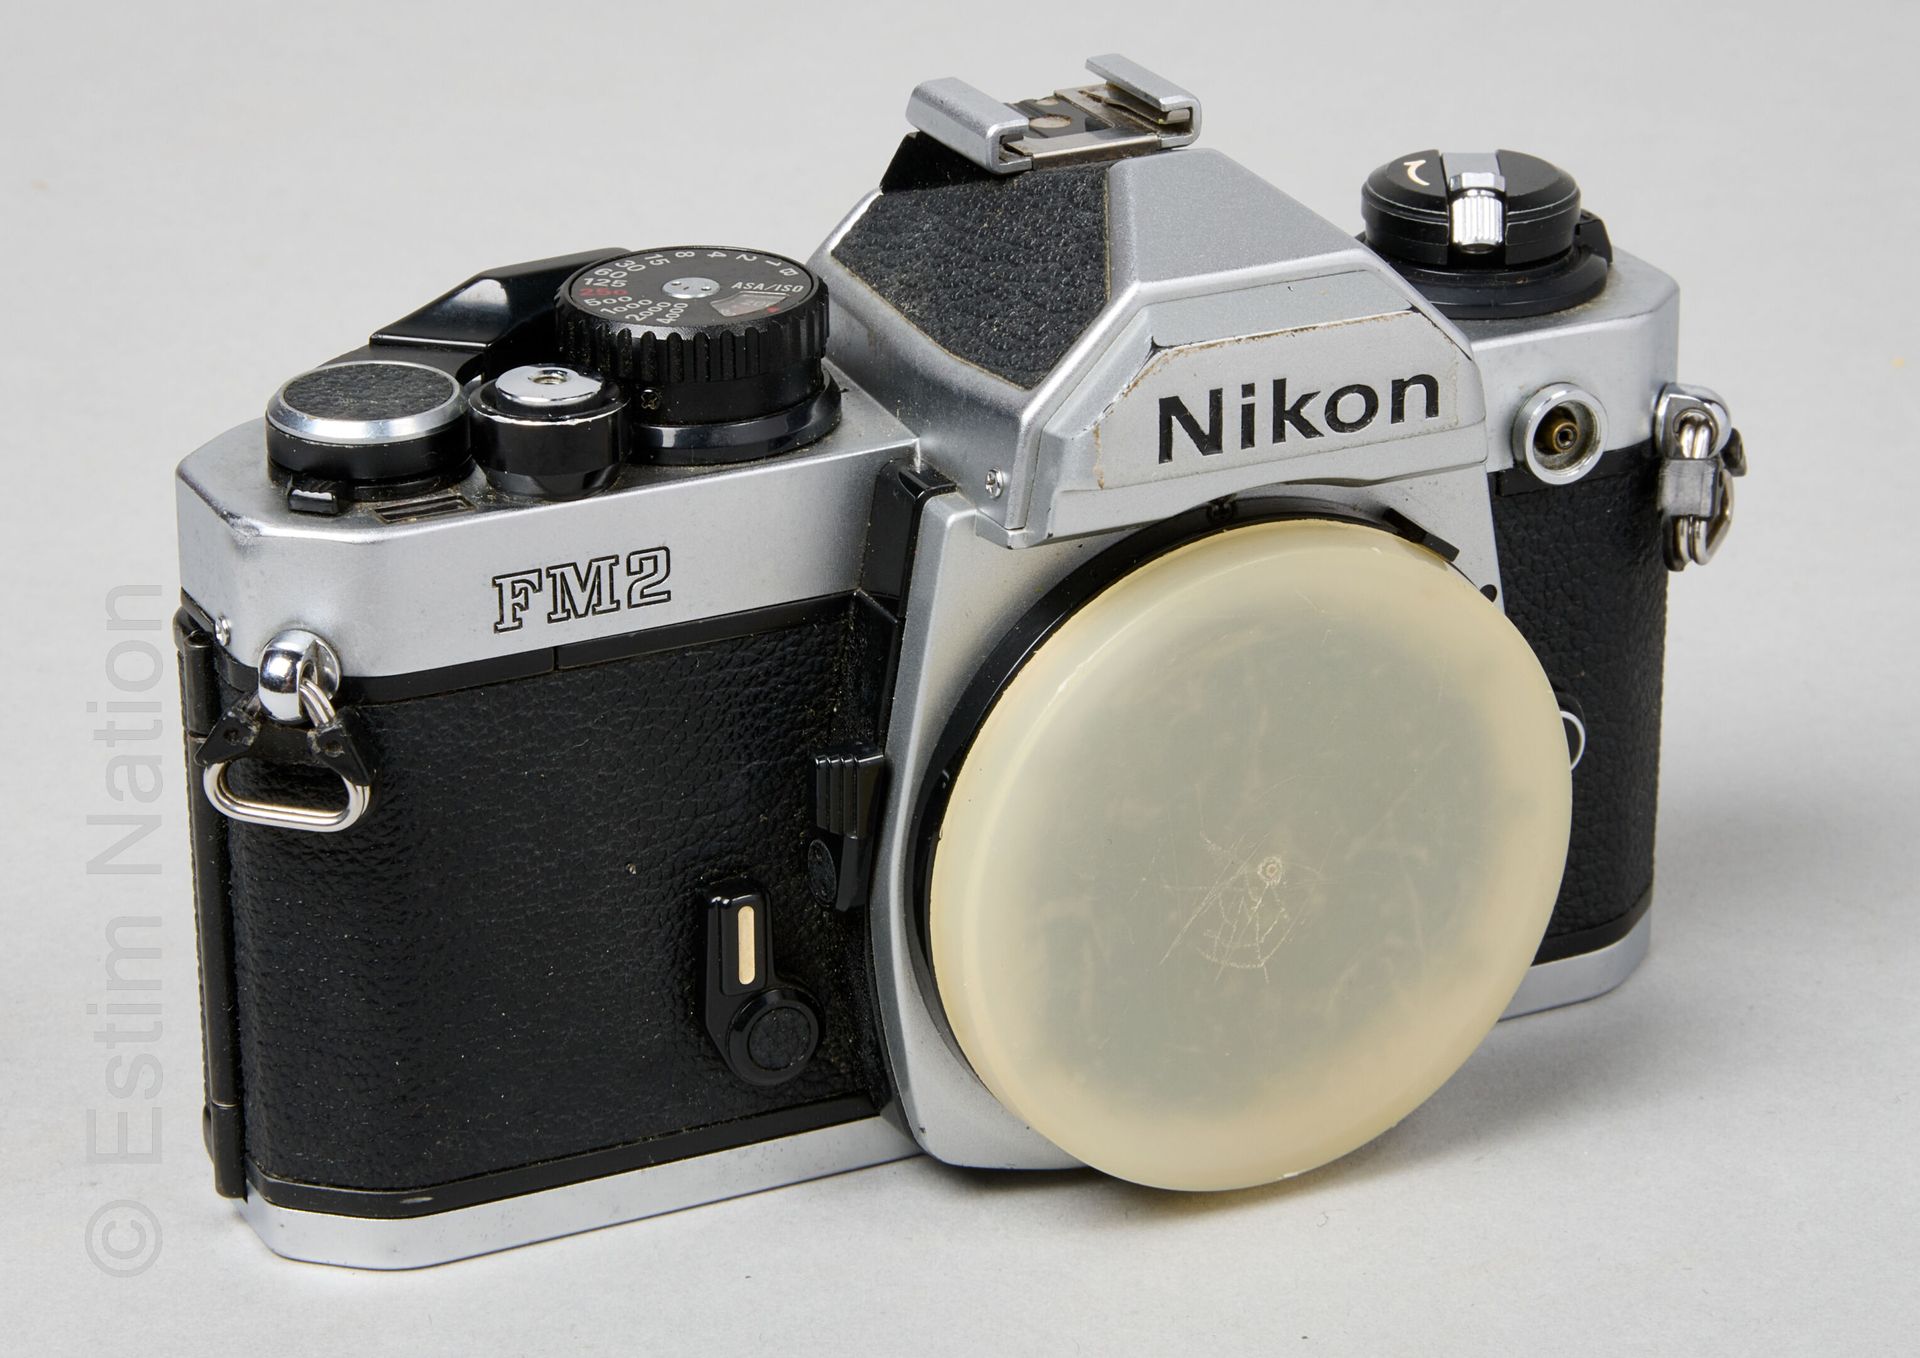 APPAREILS PHOTOGRAPHIQUES NIKON

Kameragehäuse aus Metall und Kunstleder, Modell&hellip;